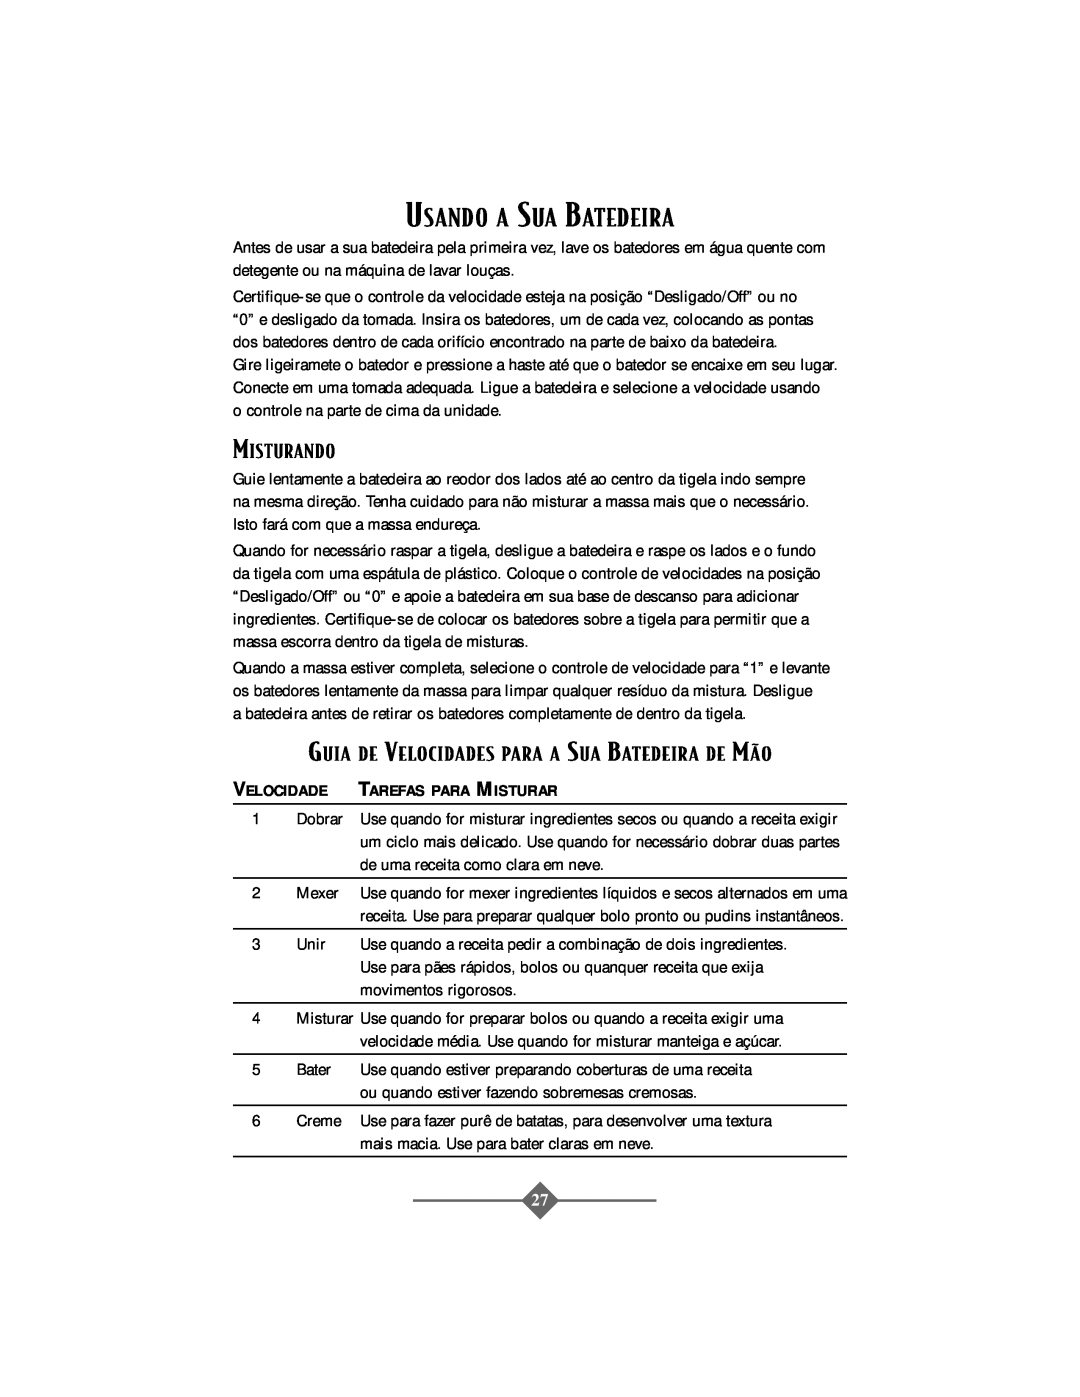 Oster 2506 instruction manual Usando A Sua Batedeira, Misturando, Guia De Velocidades Para A Sua Batedeira De Mìo 